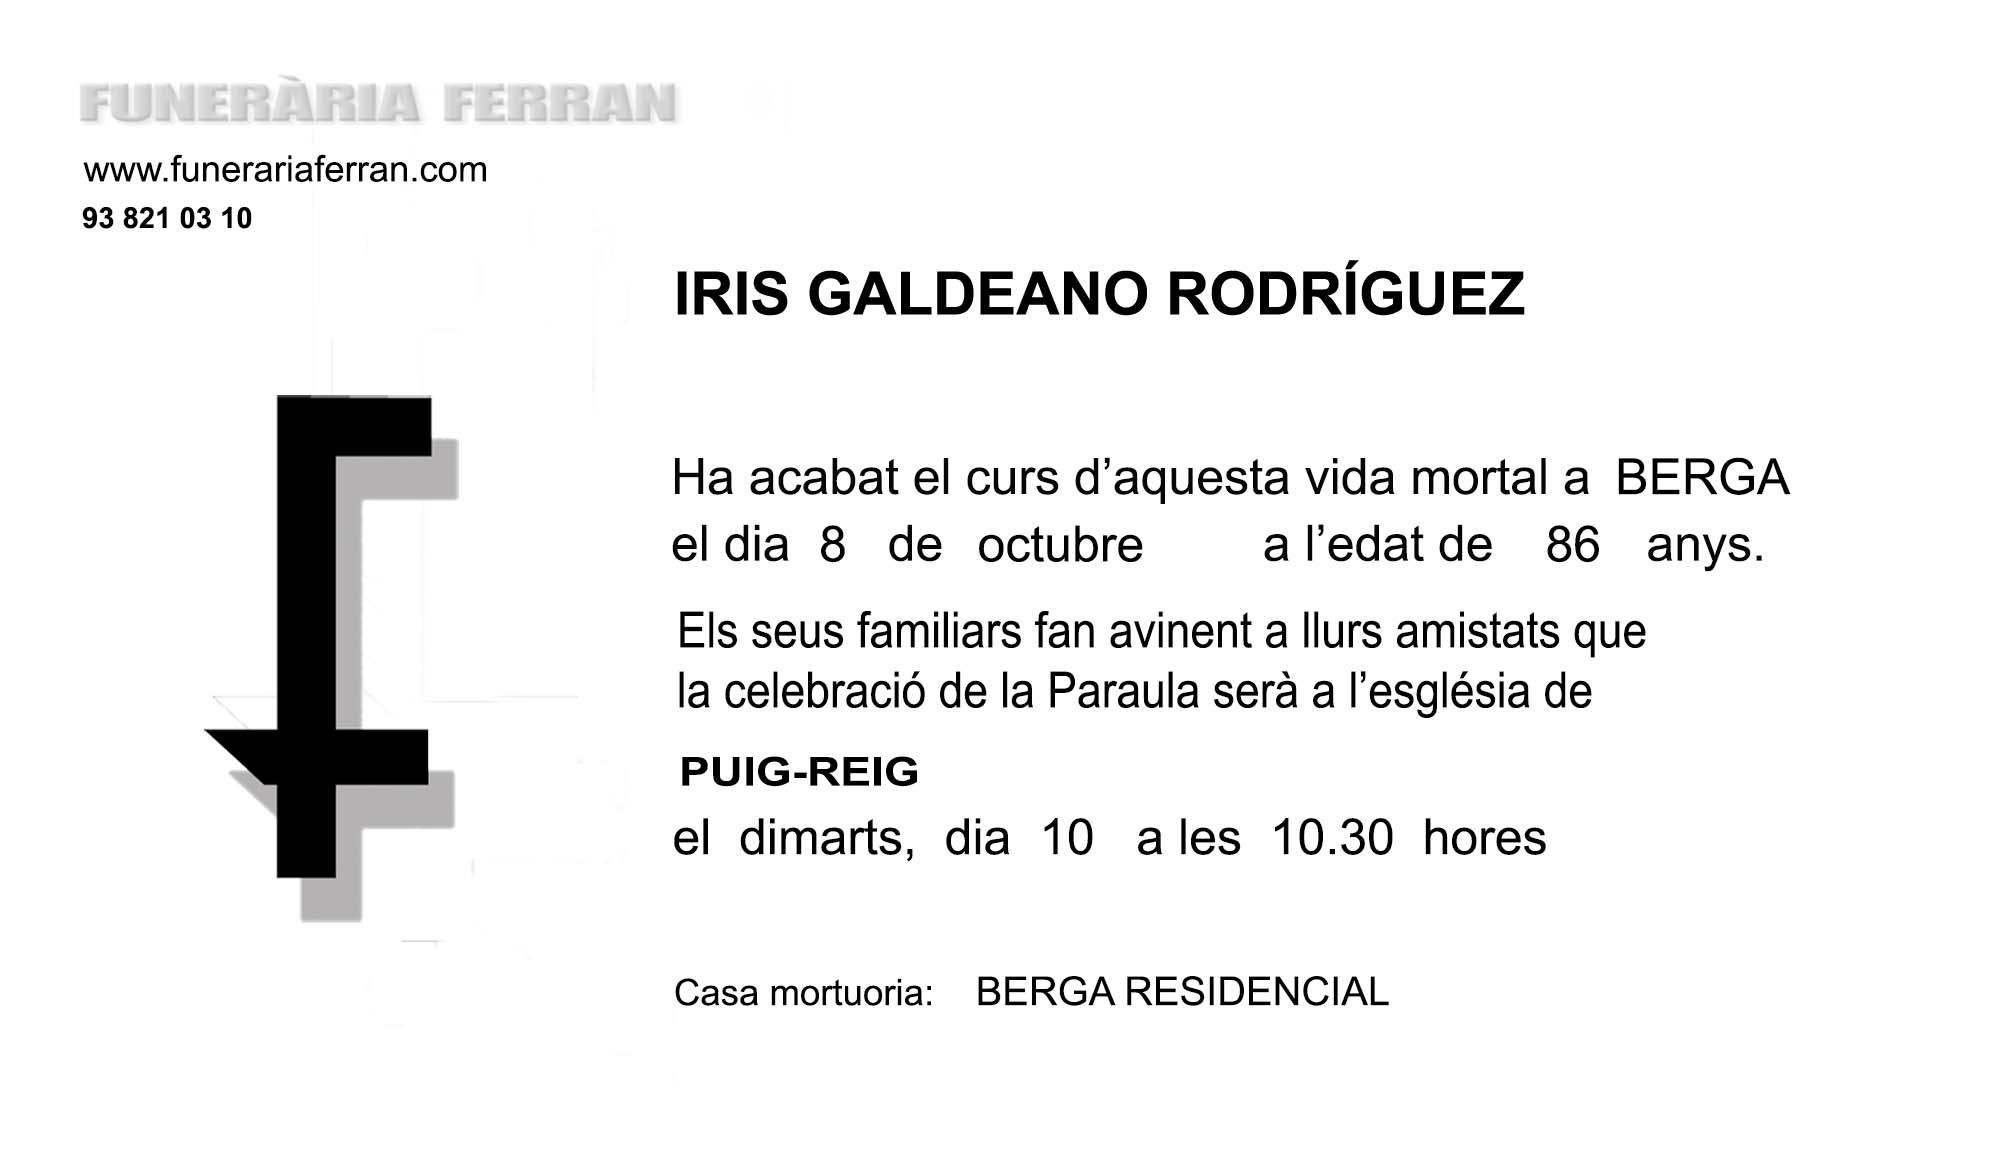 IRIS GALDEANO RODRIGUEZ ESQUELA